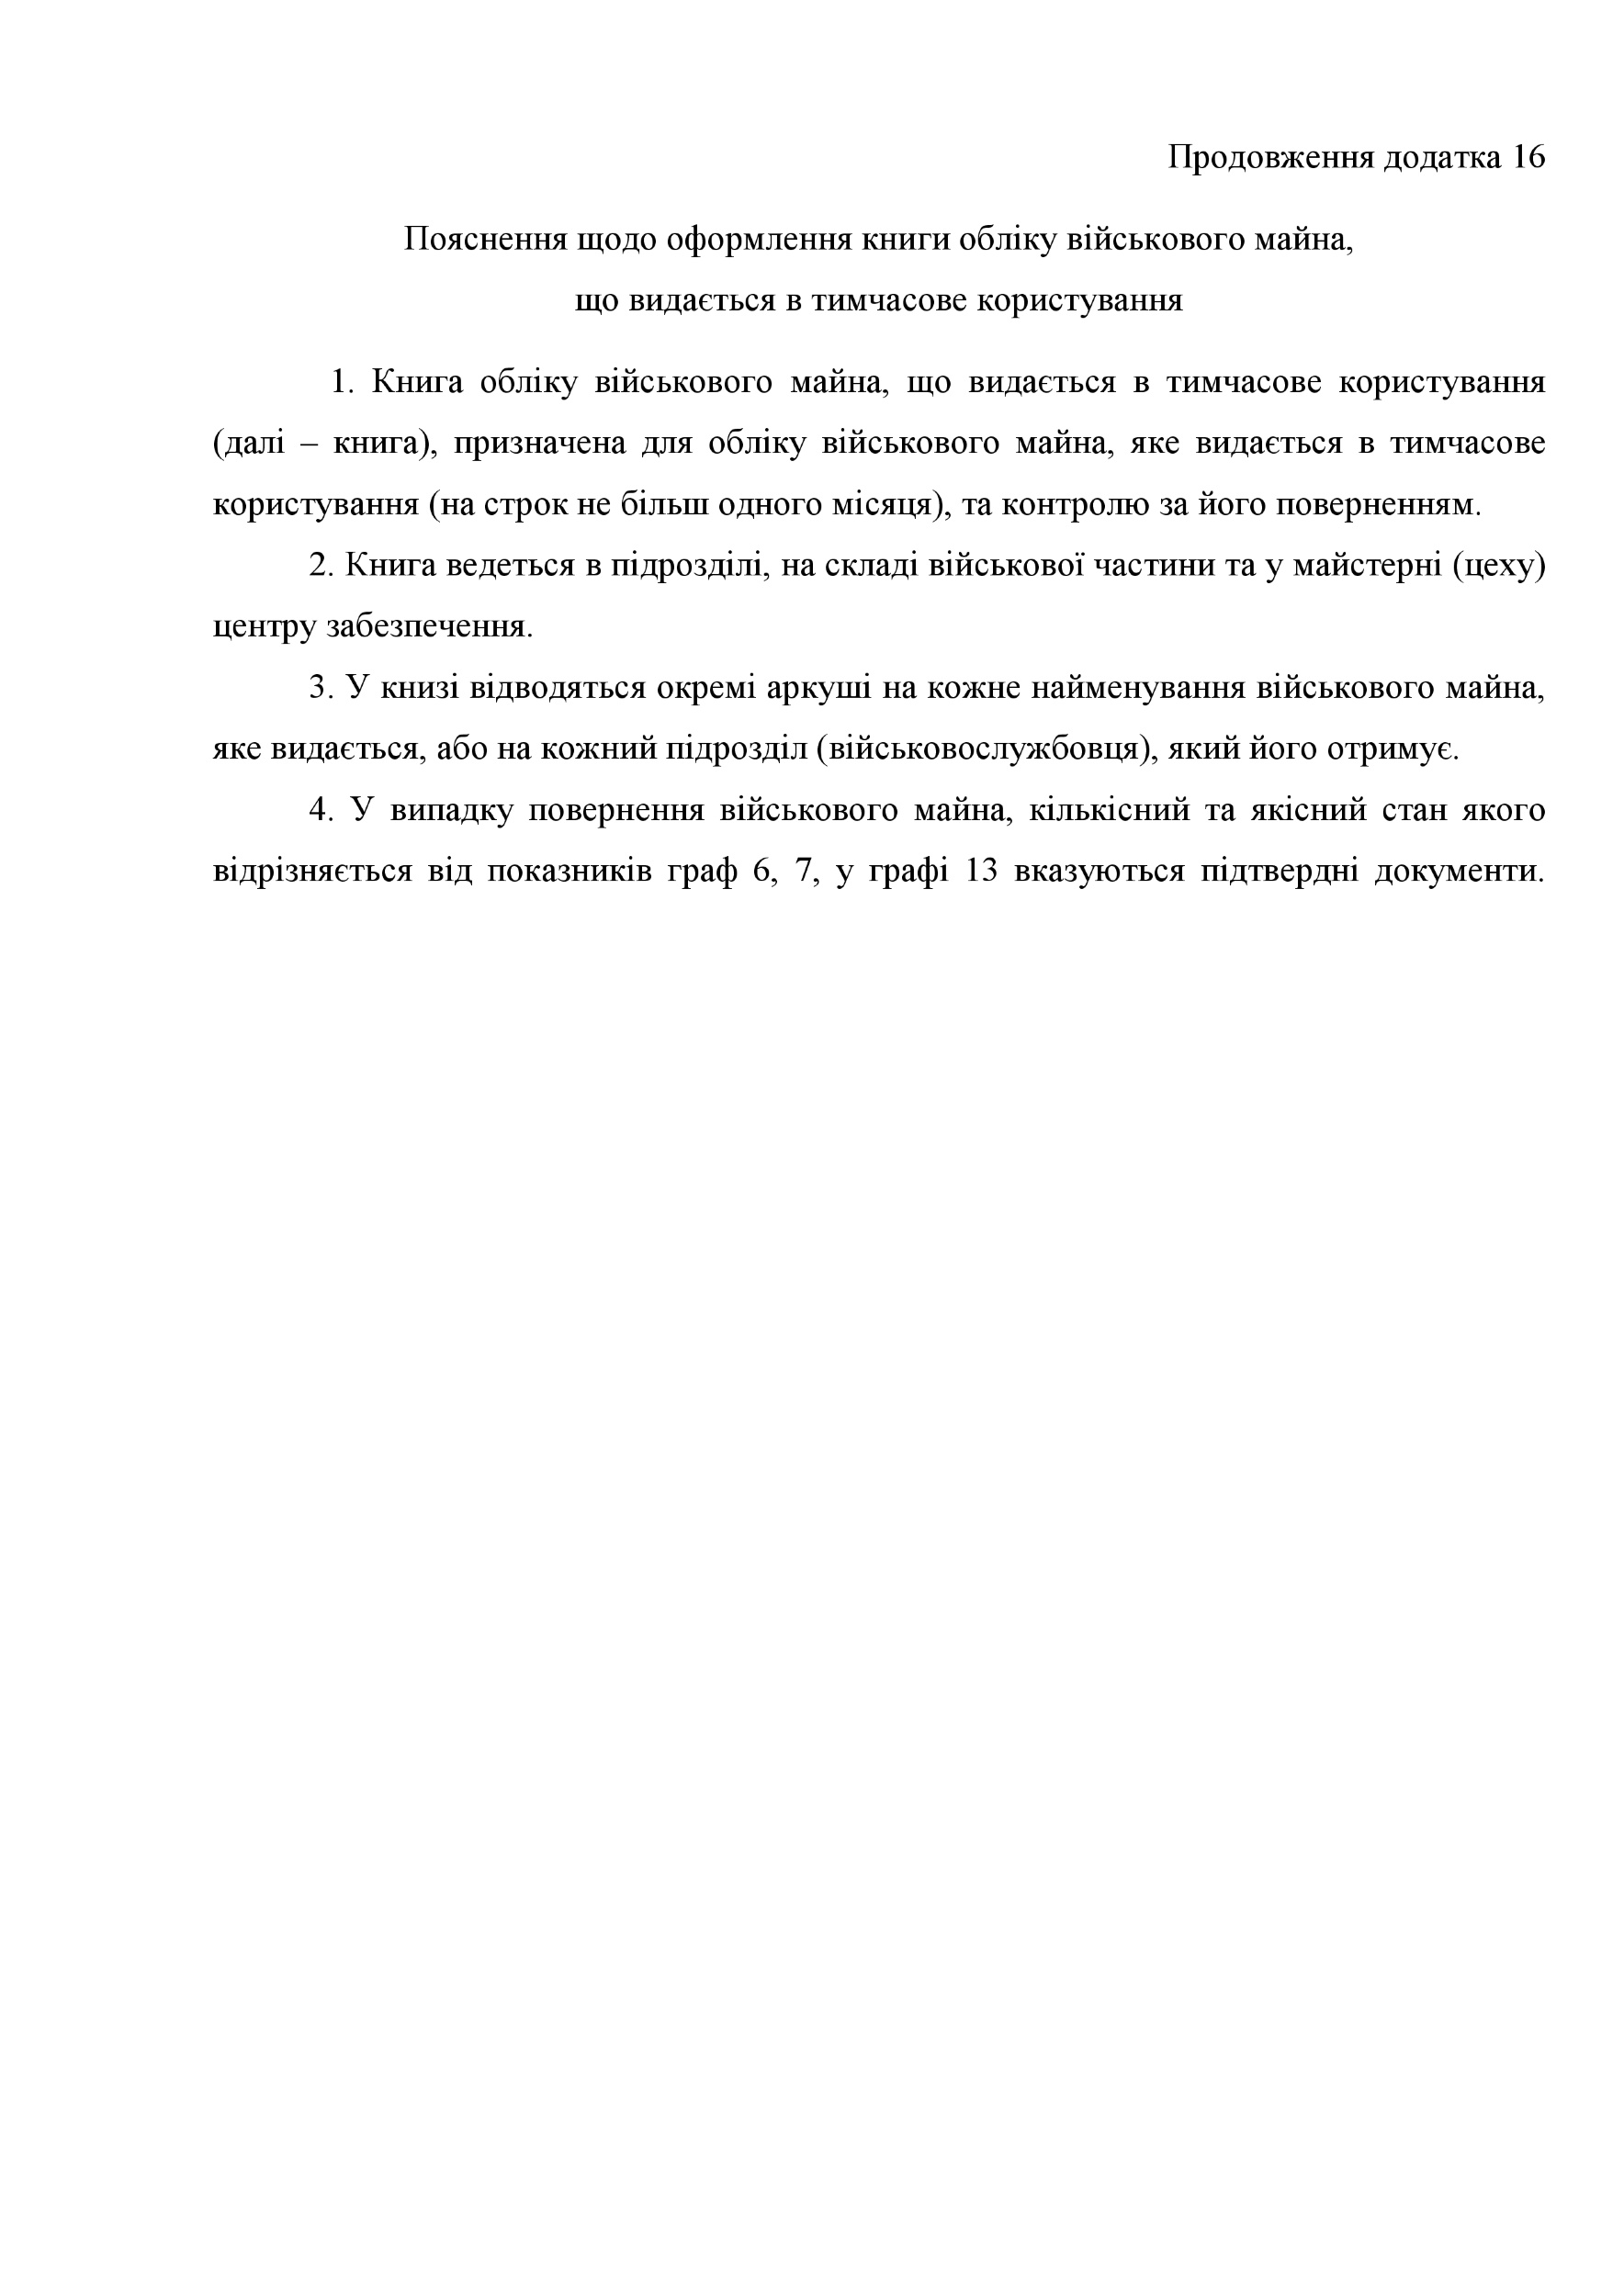 Книга обліку військового майна що видається в тимчасове користування, додаток 16 (додаток 17). Автор — Міністерство оборони України. 